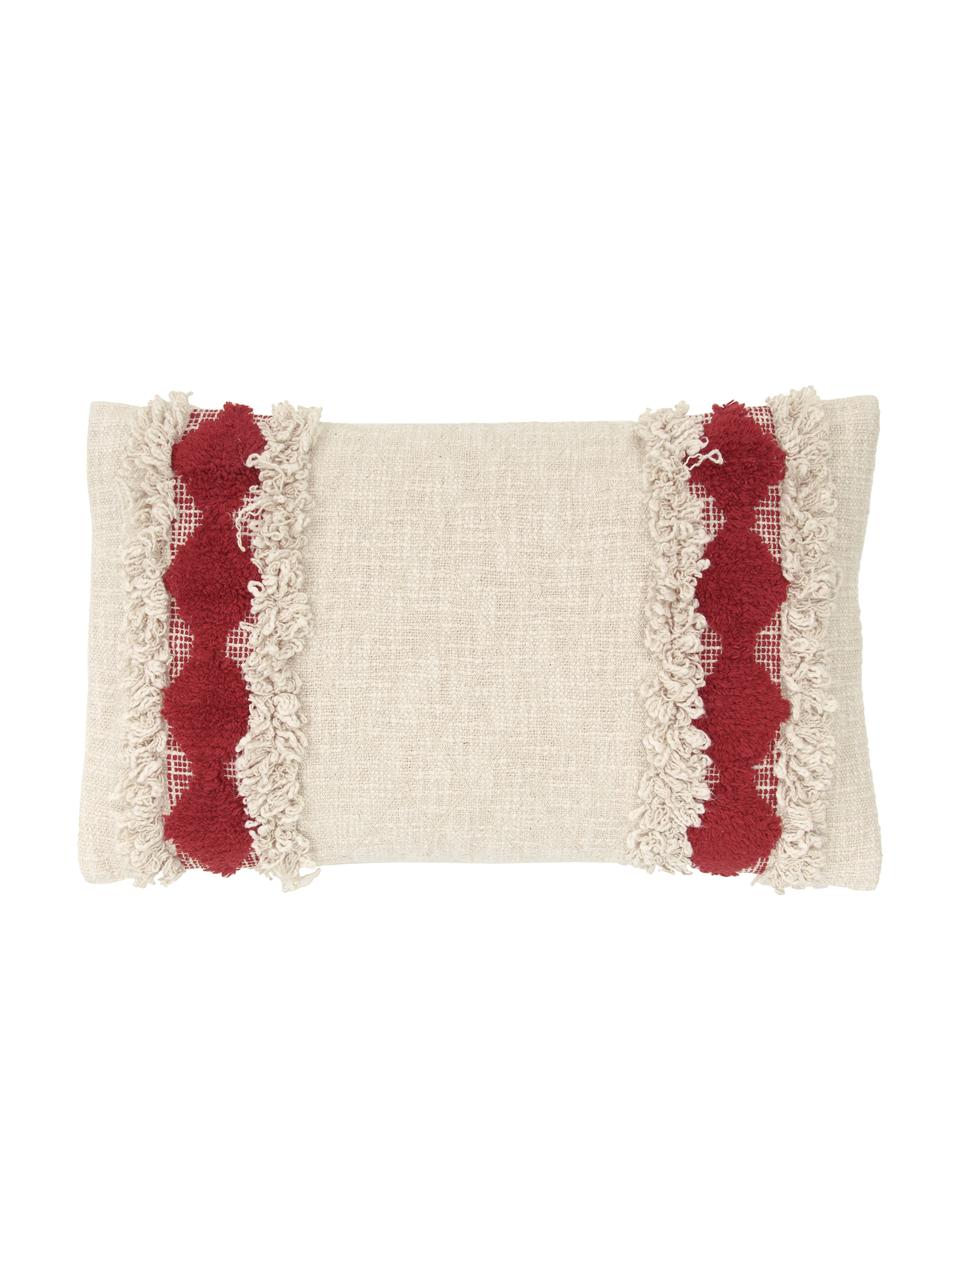 Kissenhülle Yule mit dekorativer Verzierung, 100 % Baumwolle, Beige, Rot, B 30 x L 50 cm